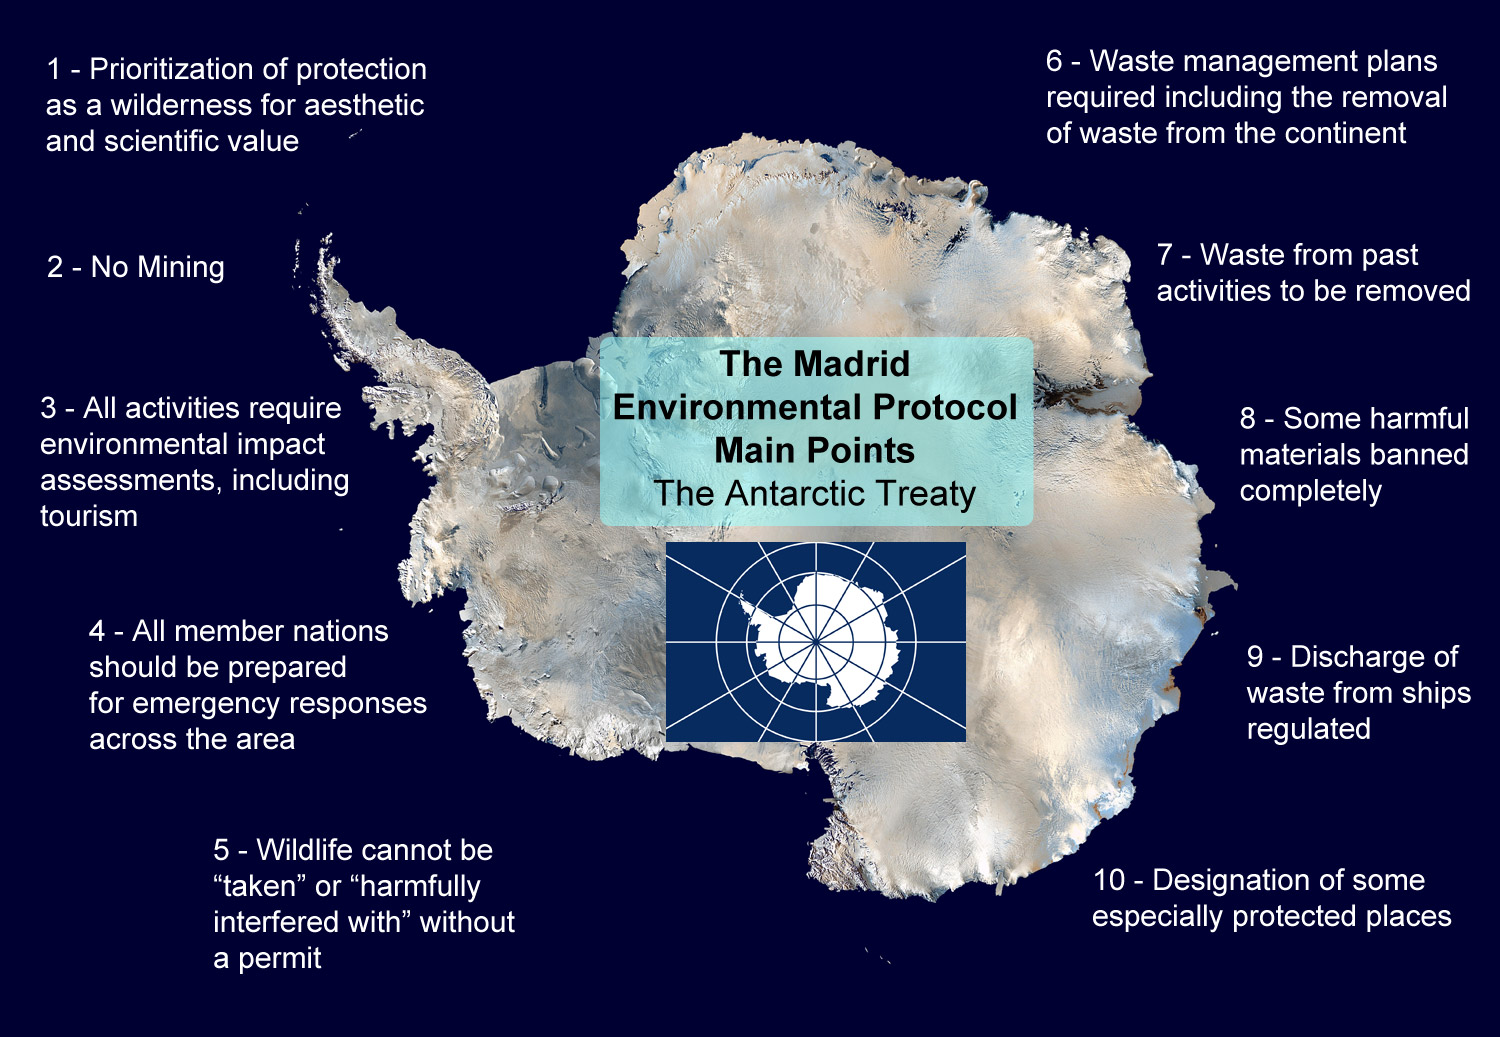 Antarctic treaty main points